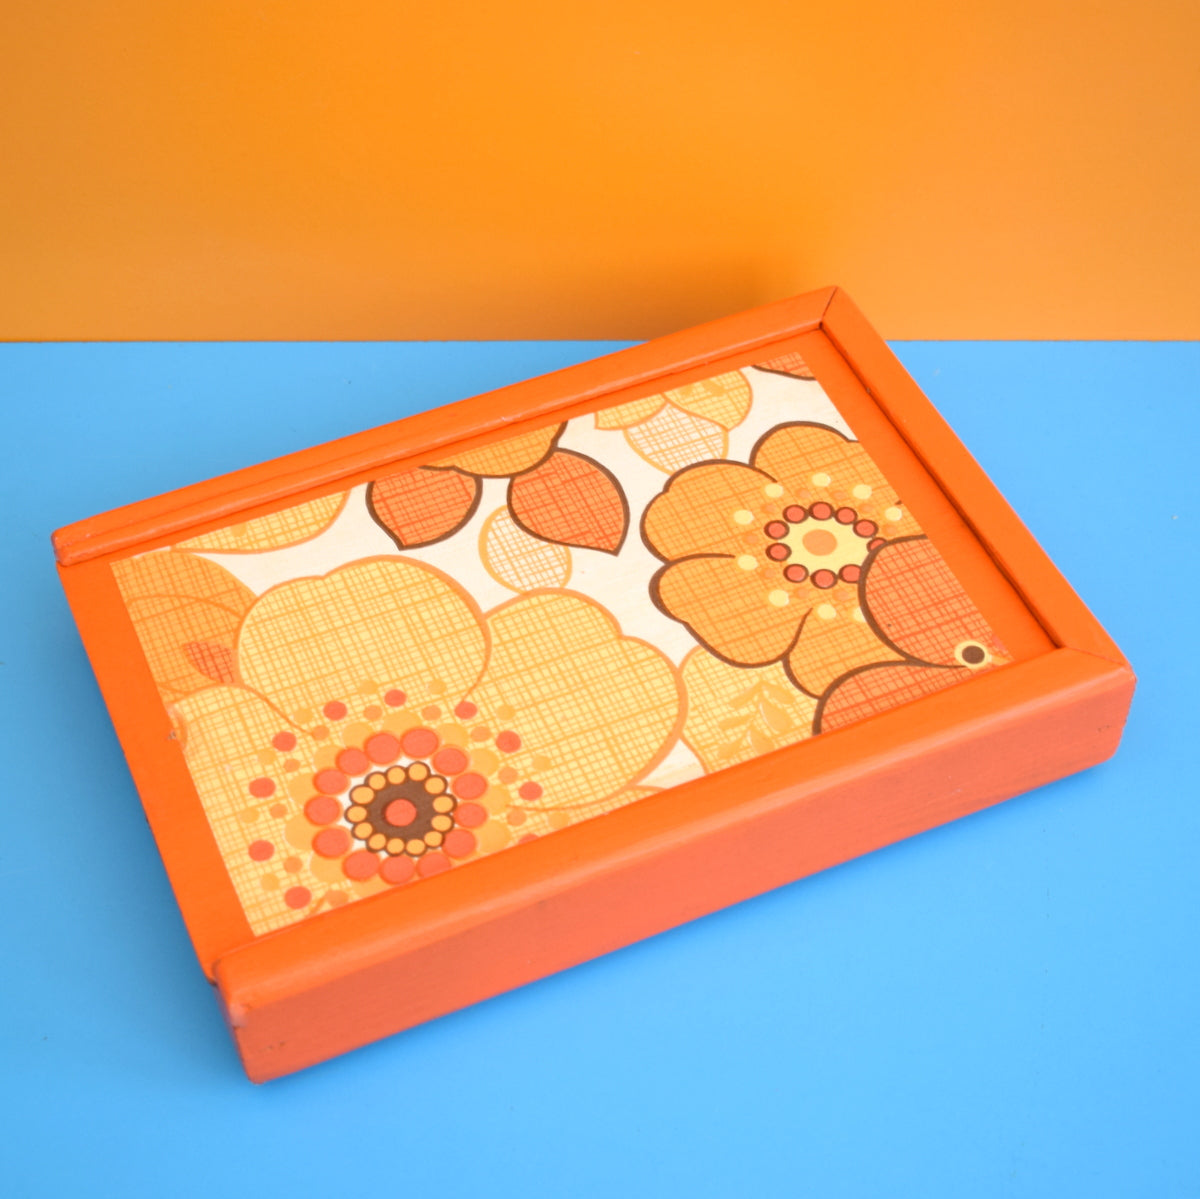 Vintage 1960s Wooden Bits Box - Flower Power - Orange